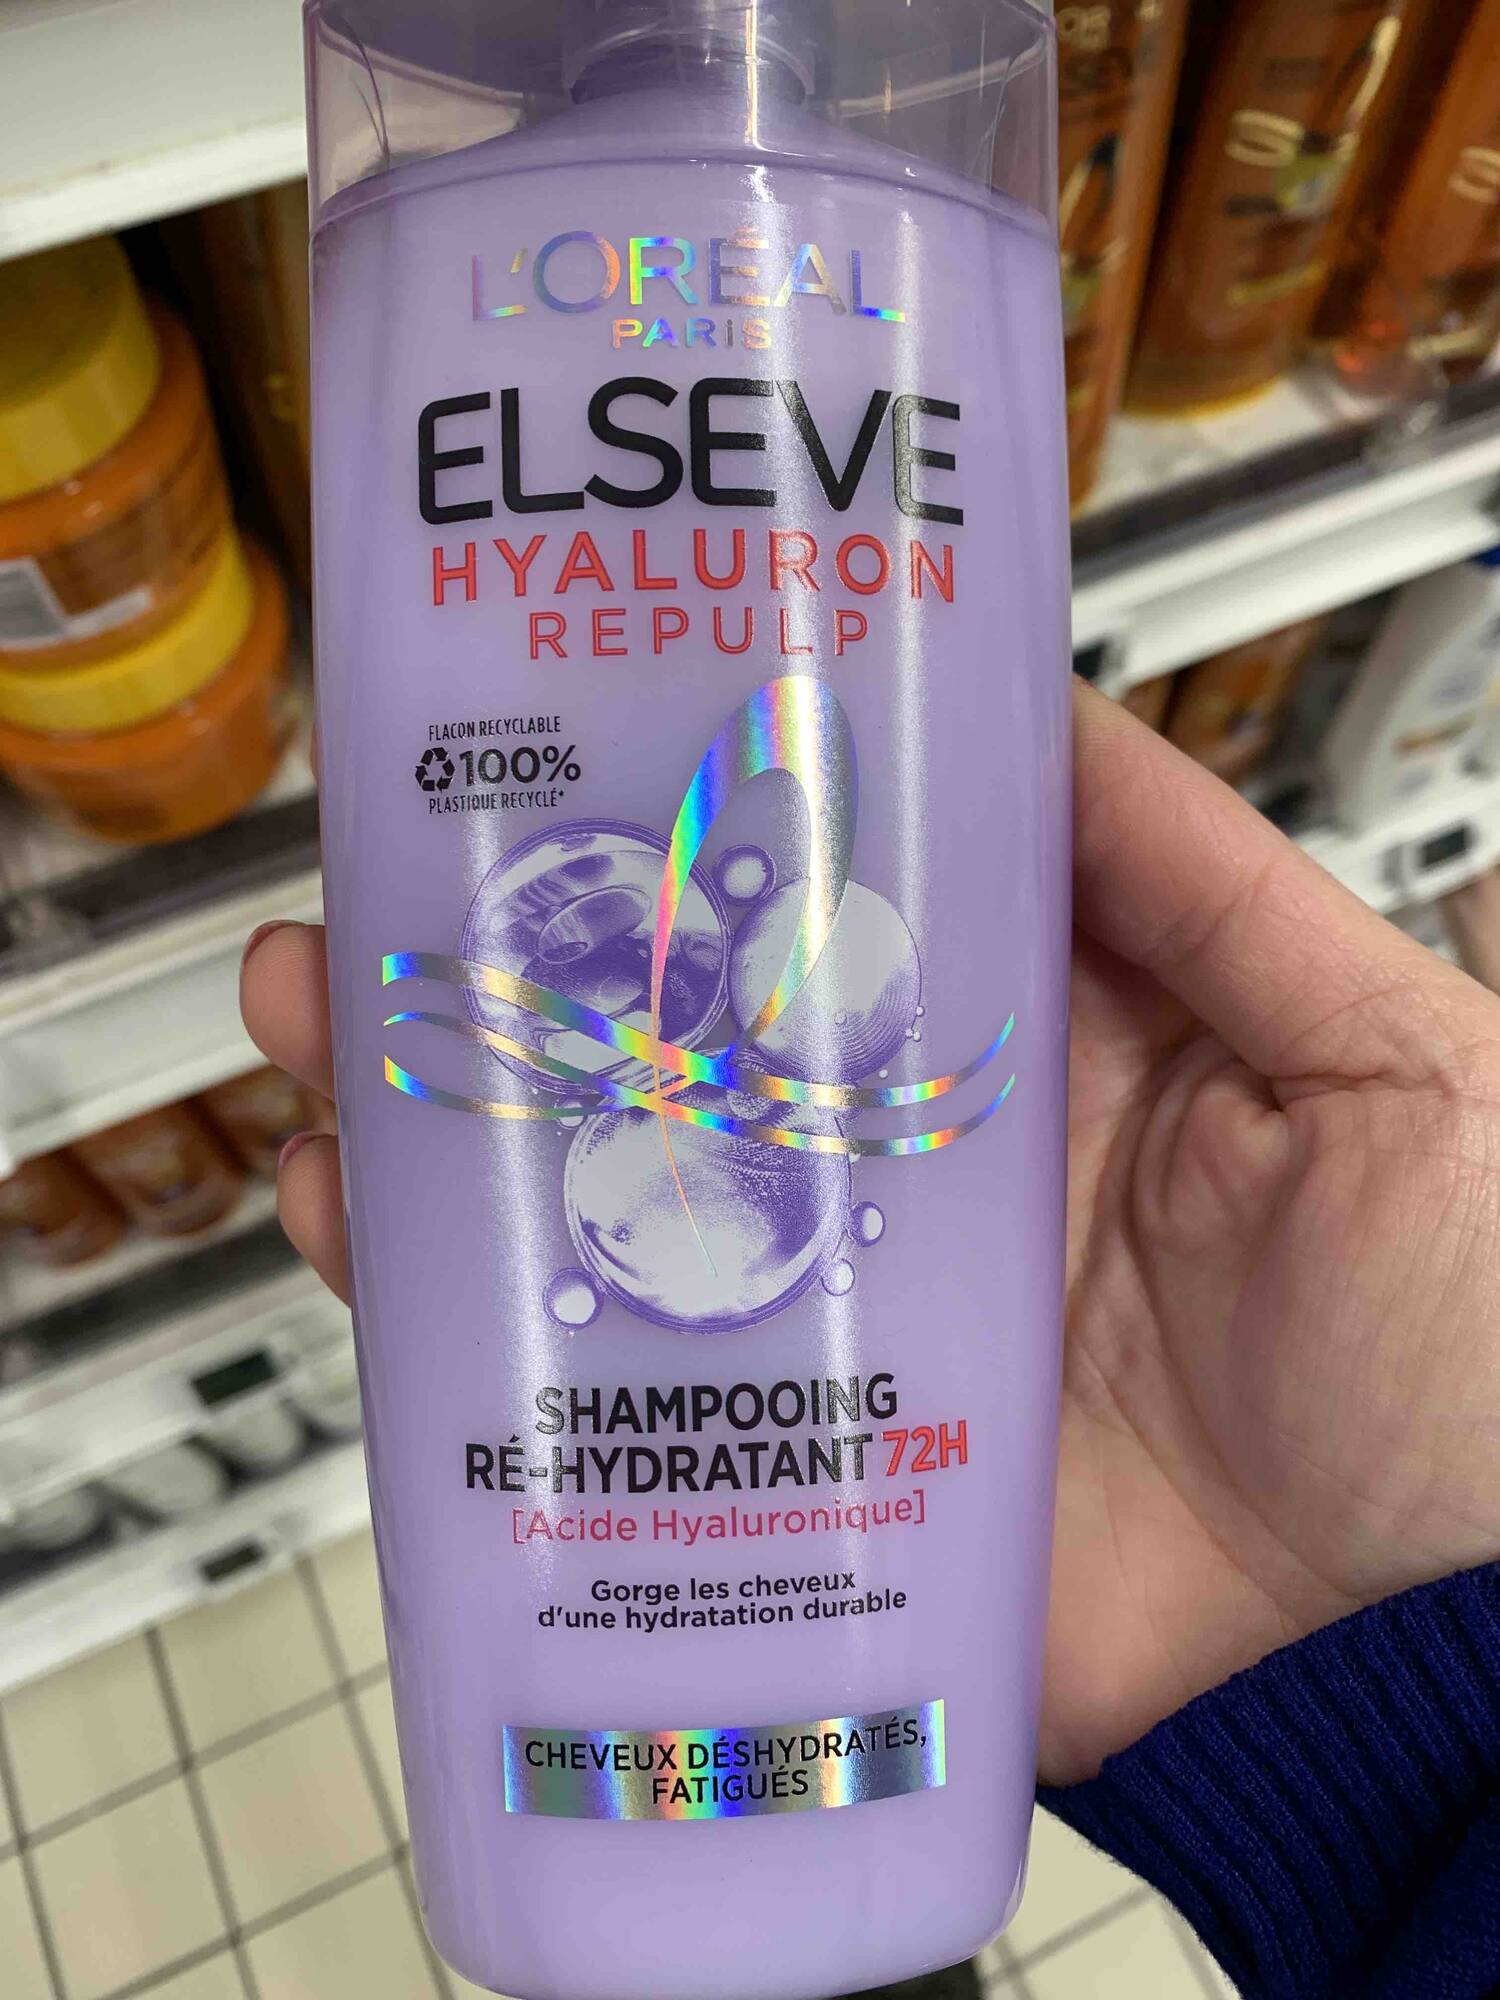 L'ORÉAL PARIS - Elsève hyaluron repulp - - Shampooing ré-hydratant 72h